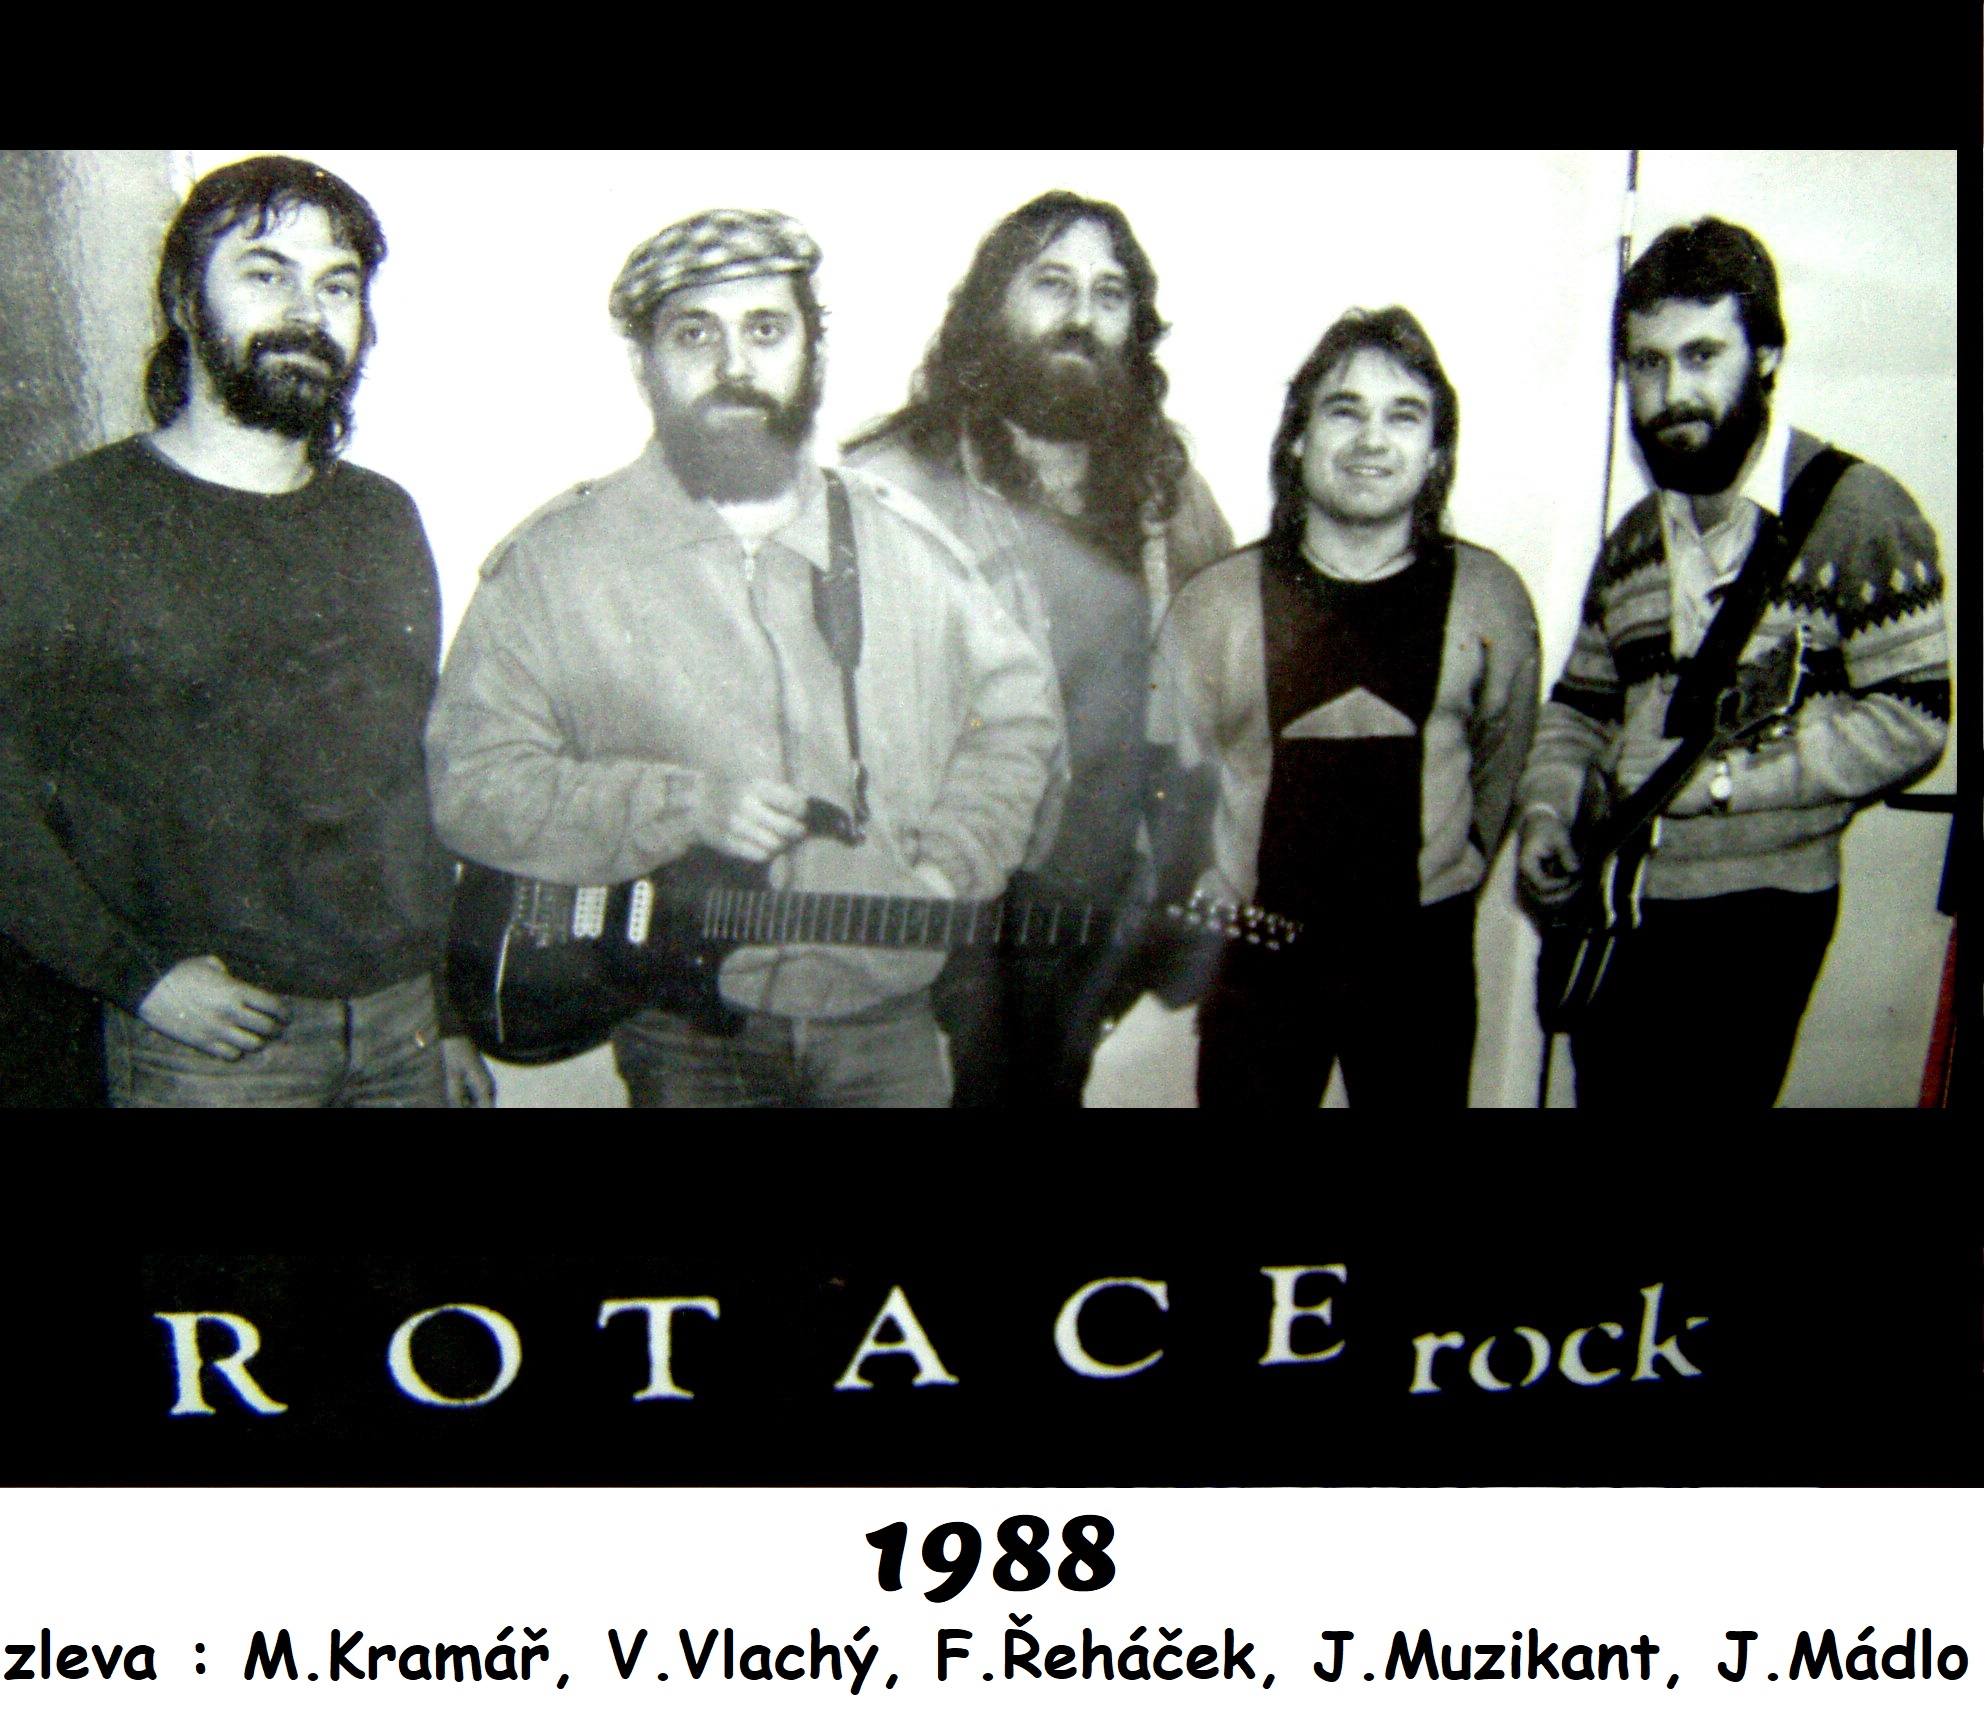 5. ROTACE 1988 (zleva M. Kramar, V. Vlachy, F. Rehacek, J. Muzikant, J. Madlo)